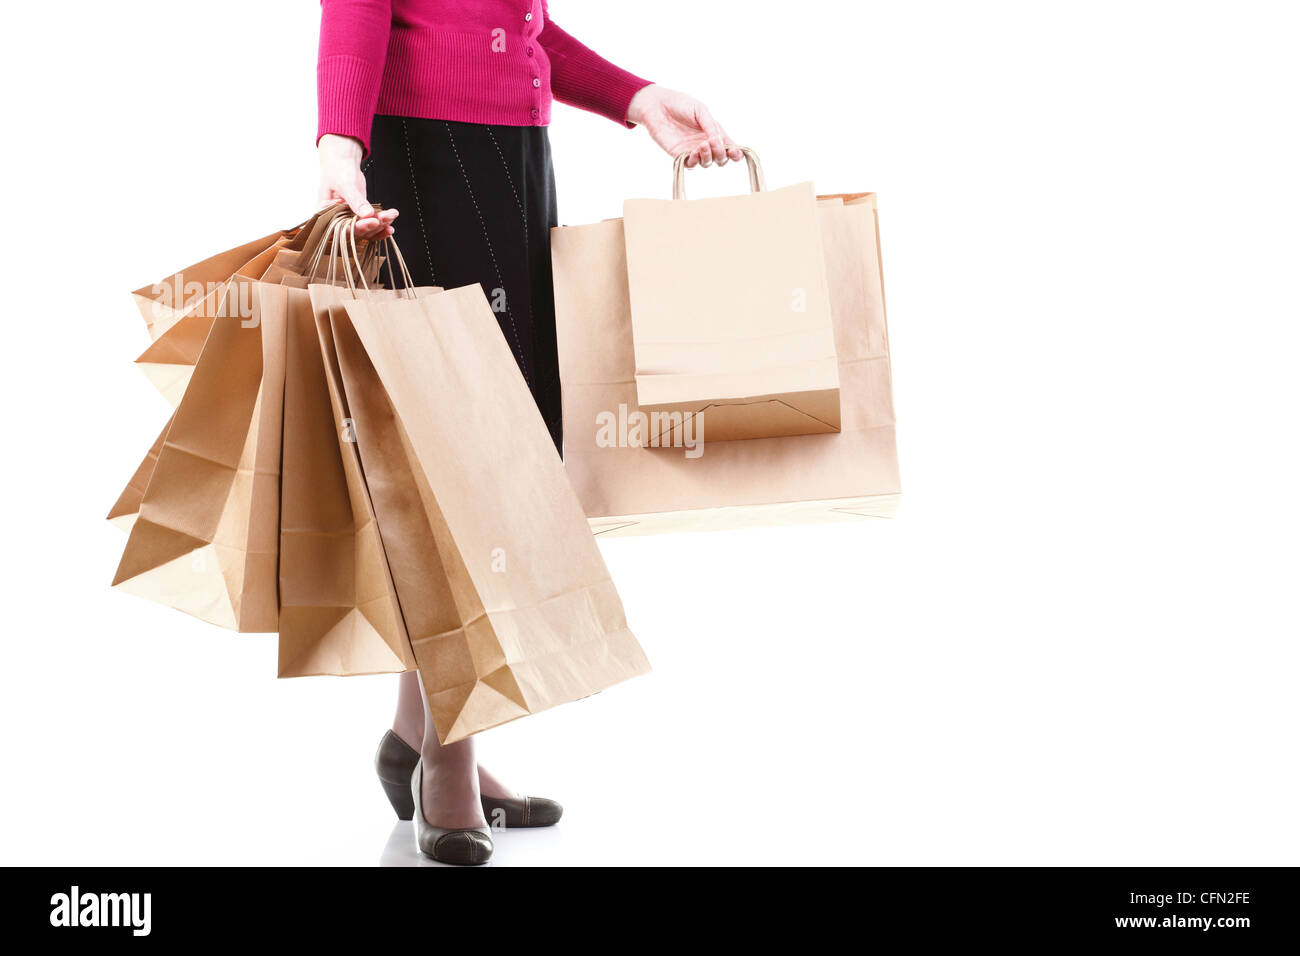 Shopping braun Recycling Geschenktüten in Frau hand isolierten weißen  Hintergrund Stockfotografie - Alamy